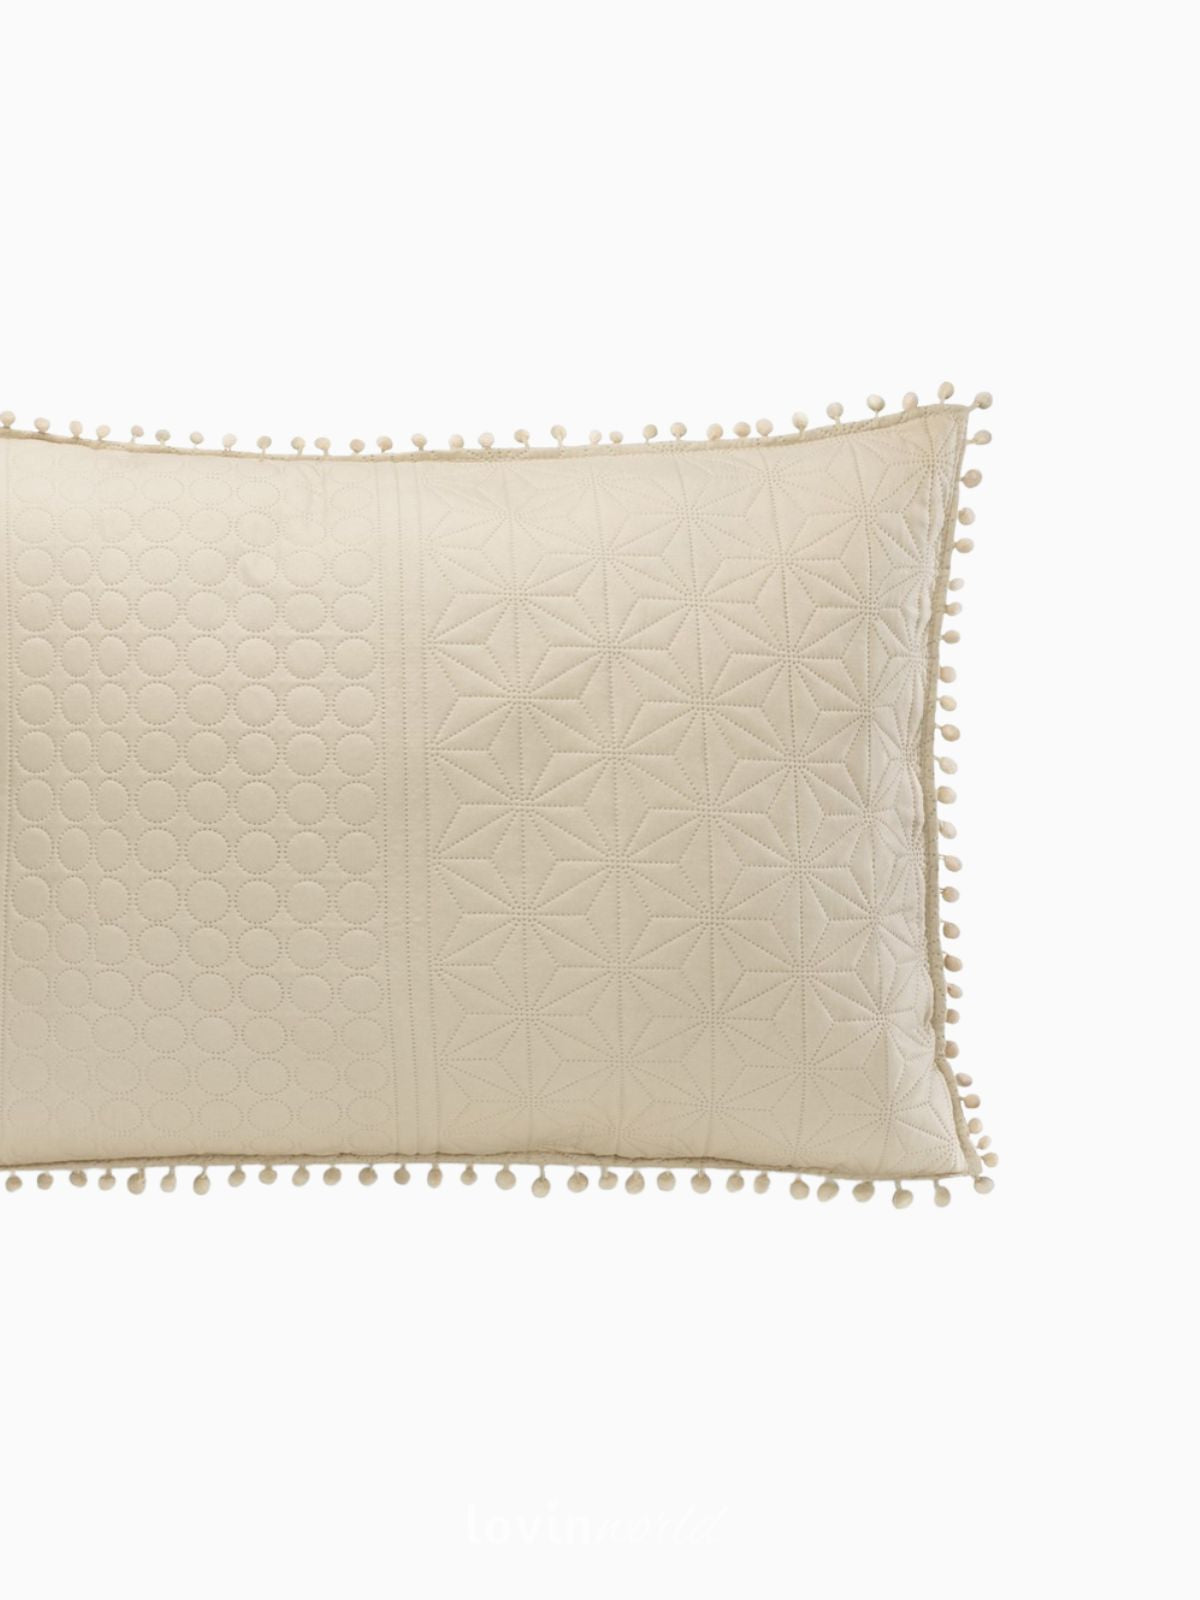 Cuscino decorativo Meadore in colore beige 50x70 cm.-3